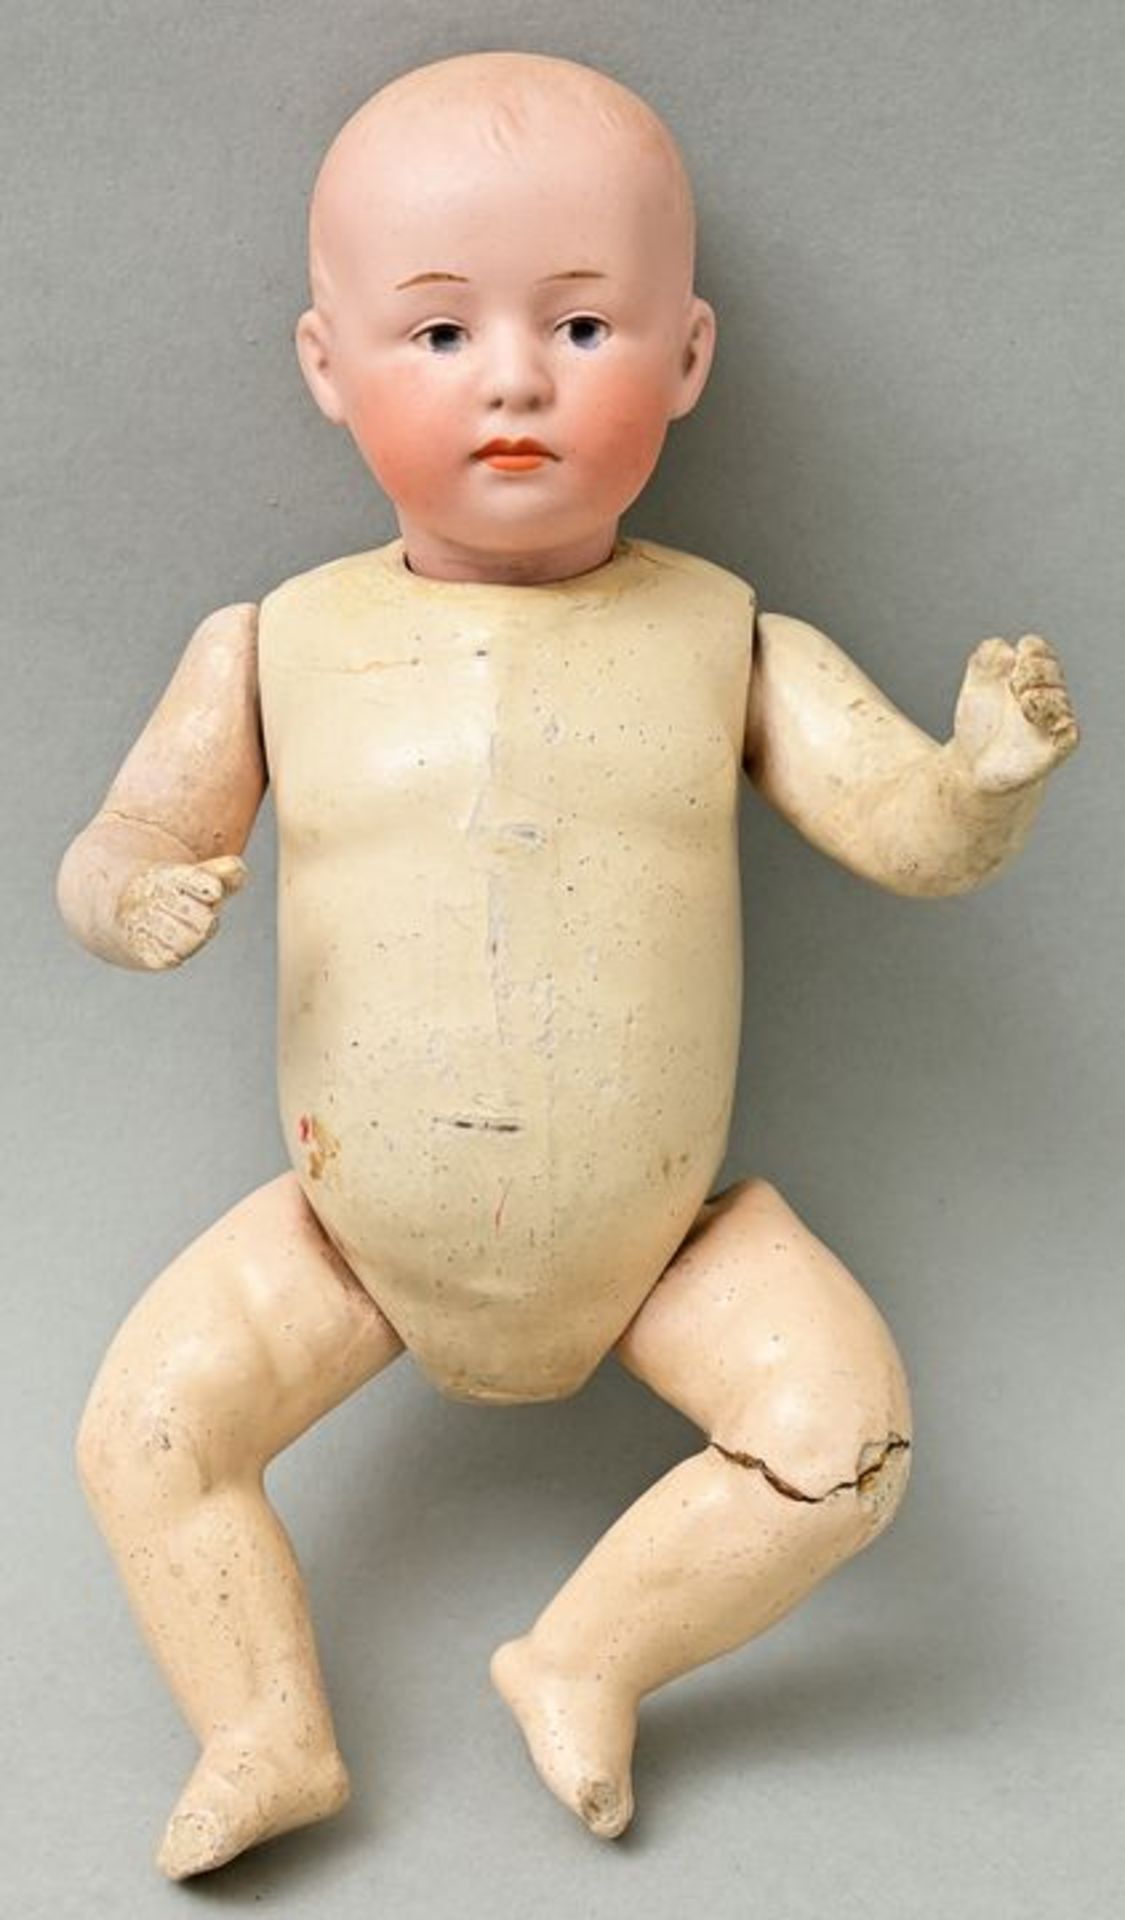 Babypüppchen/ baby doll